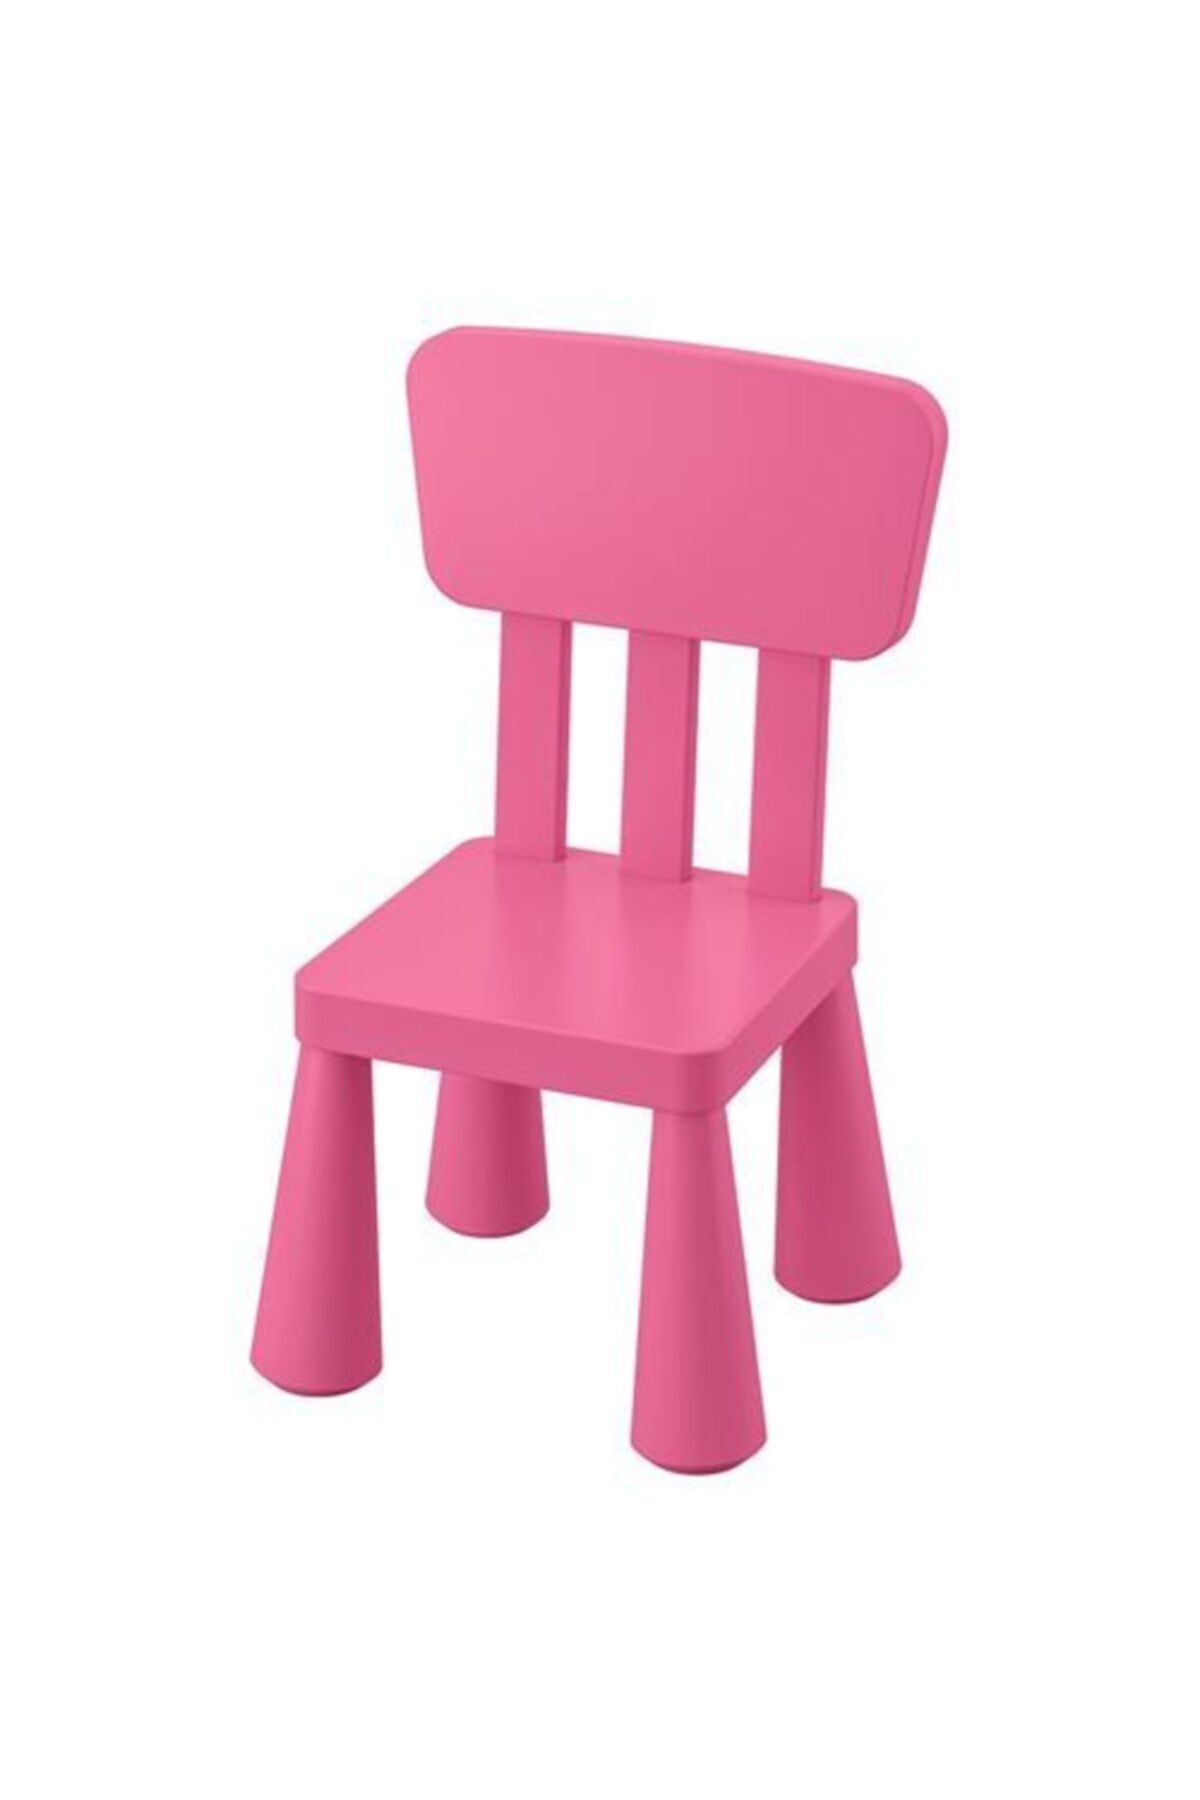 IKEA Çocuk Tabure-sandalyesi Pembe Renk Çocuk Sandalye-oturak Masa Oyun Sandalyesi Polipropilen Plastik